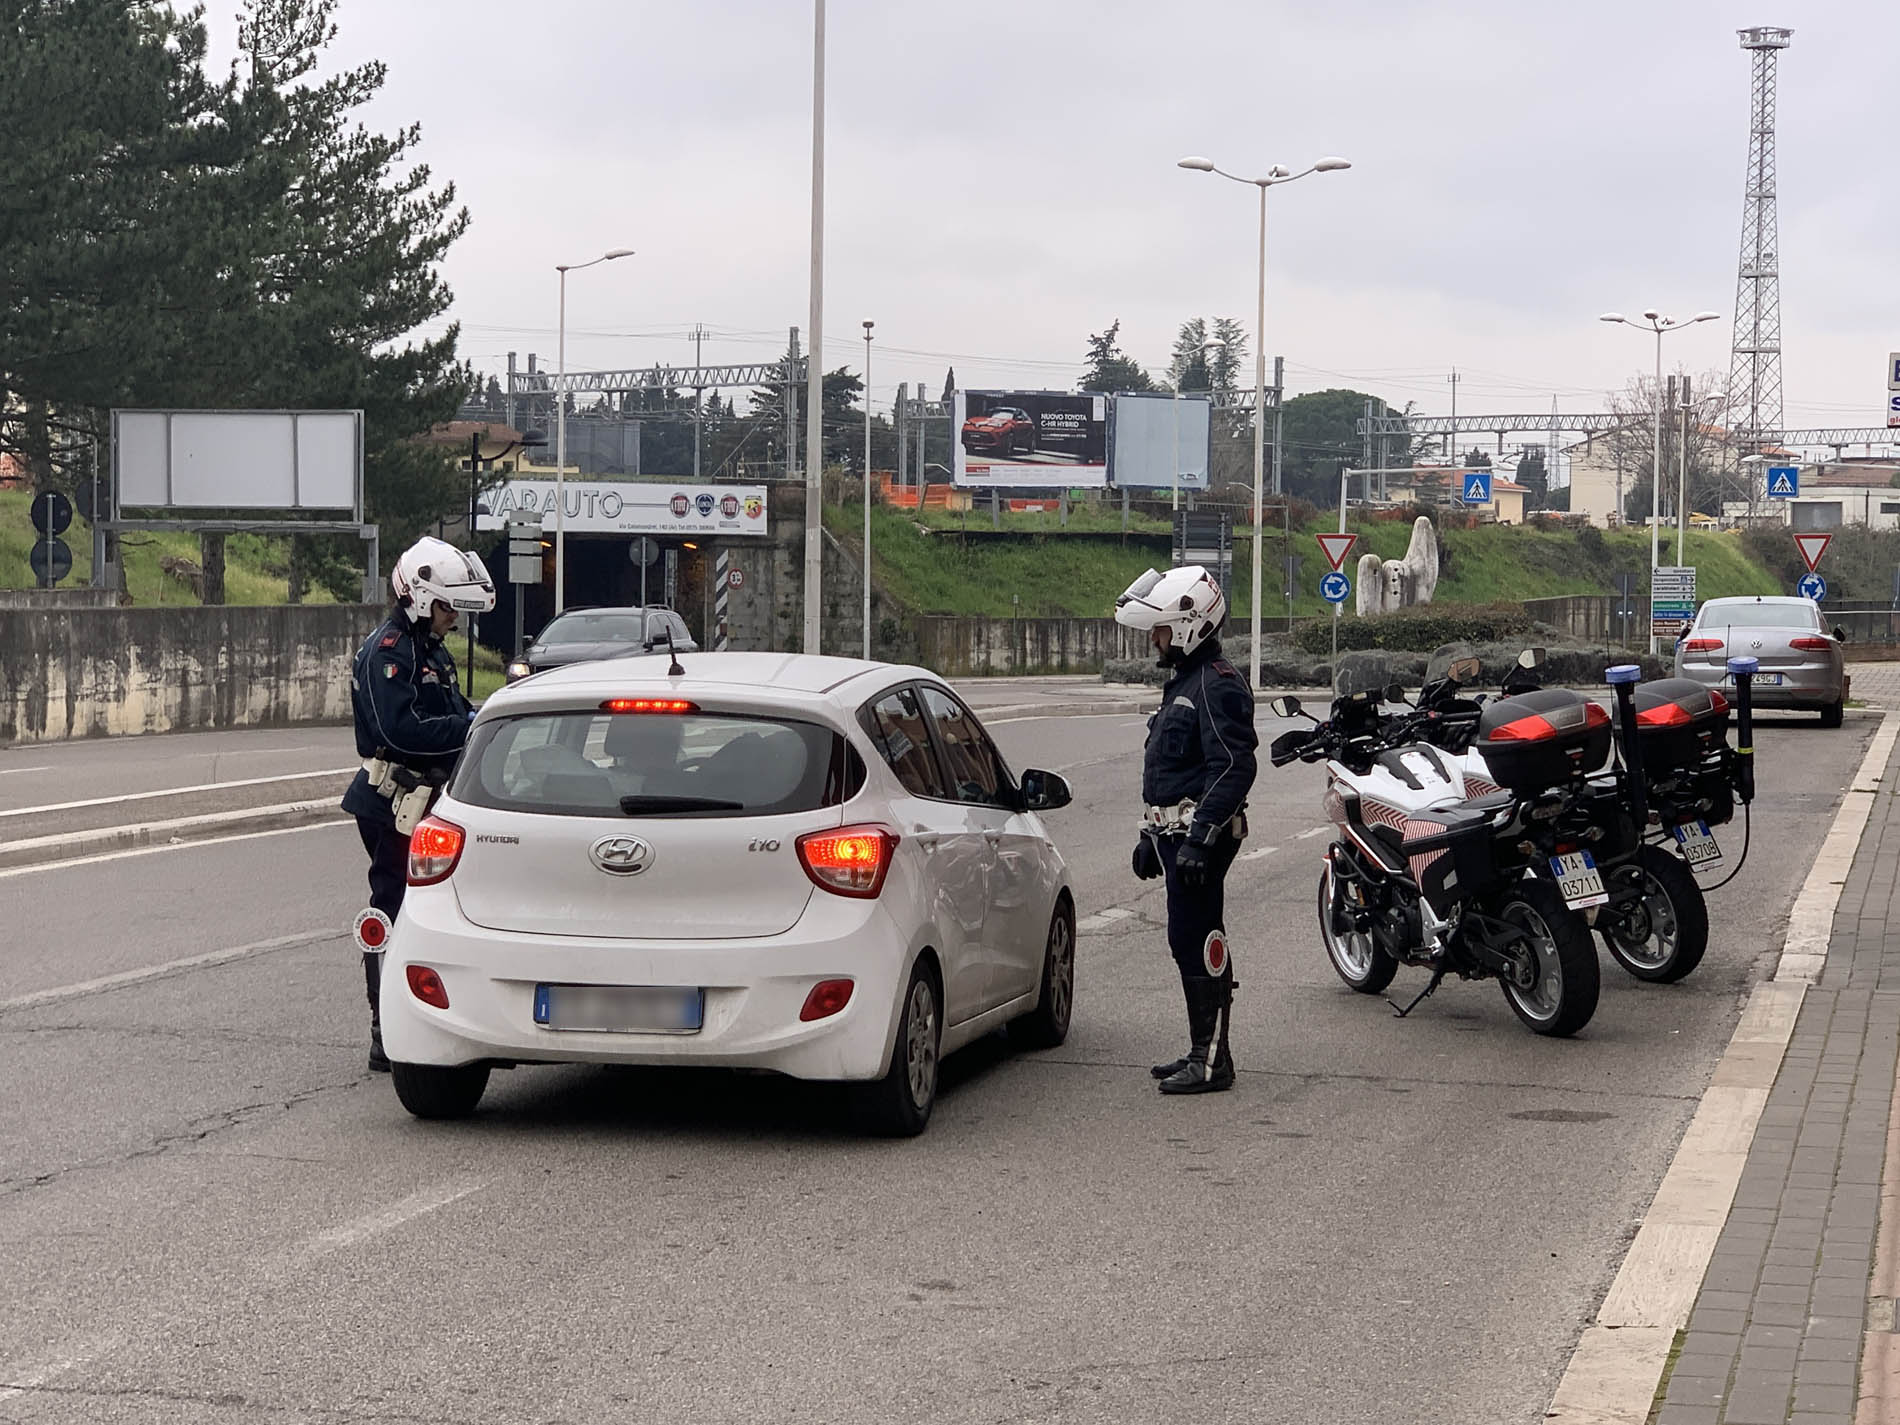 Polizia municipale: guida in stato di ebbrezza in tempo di Covid